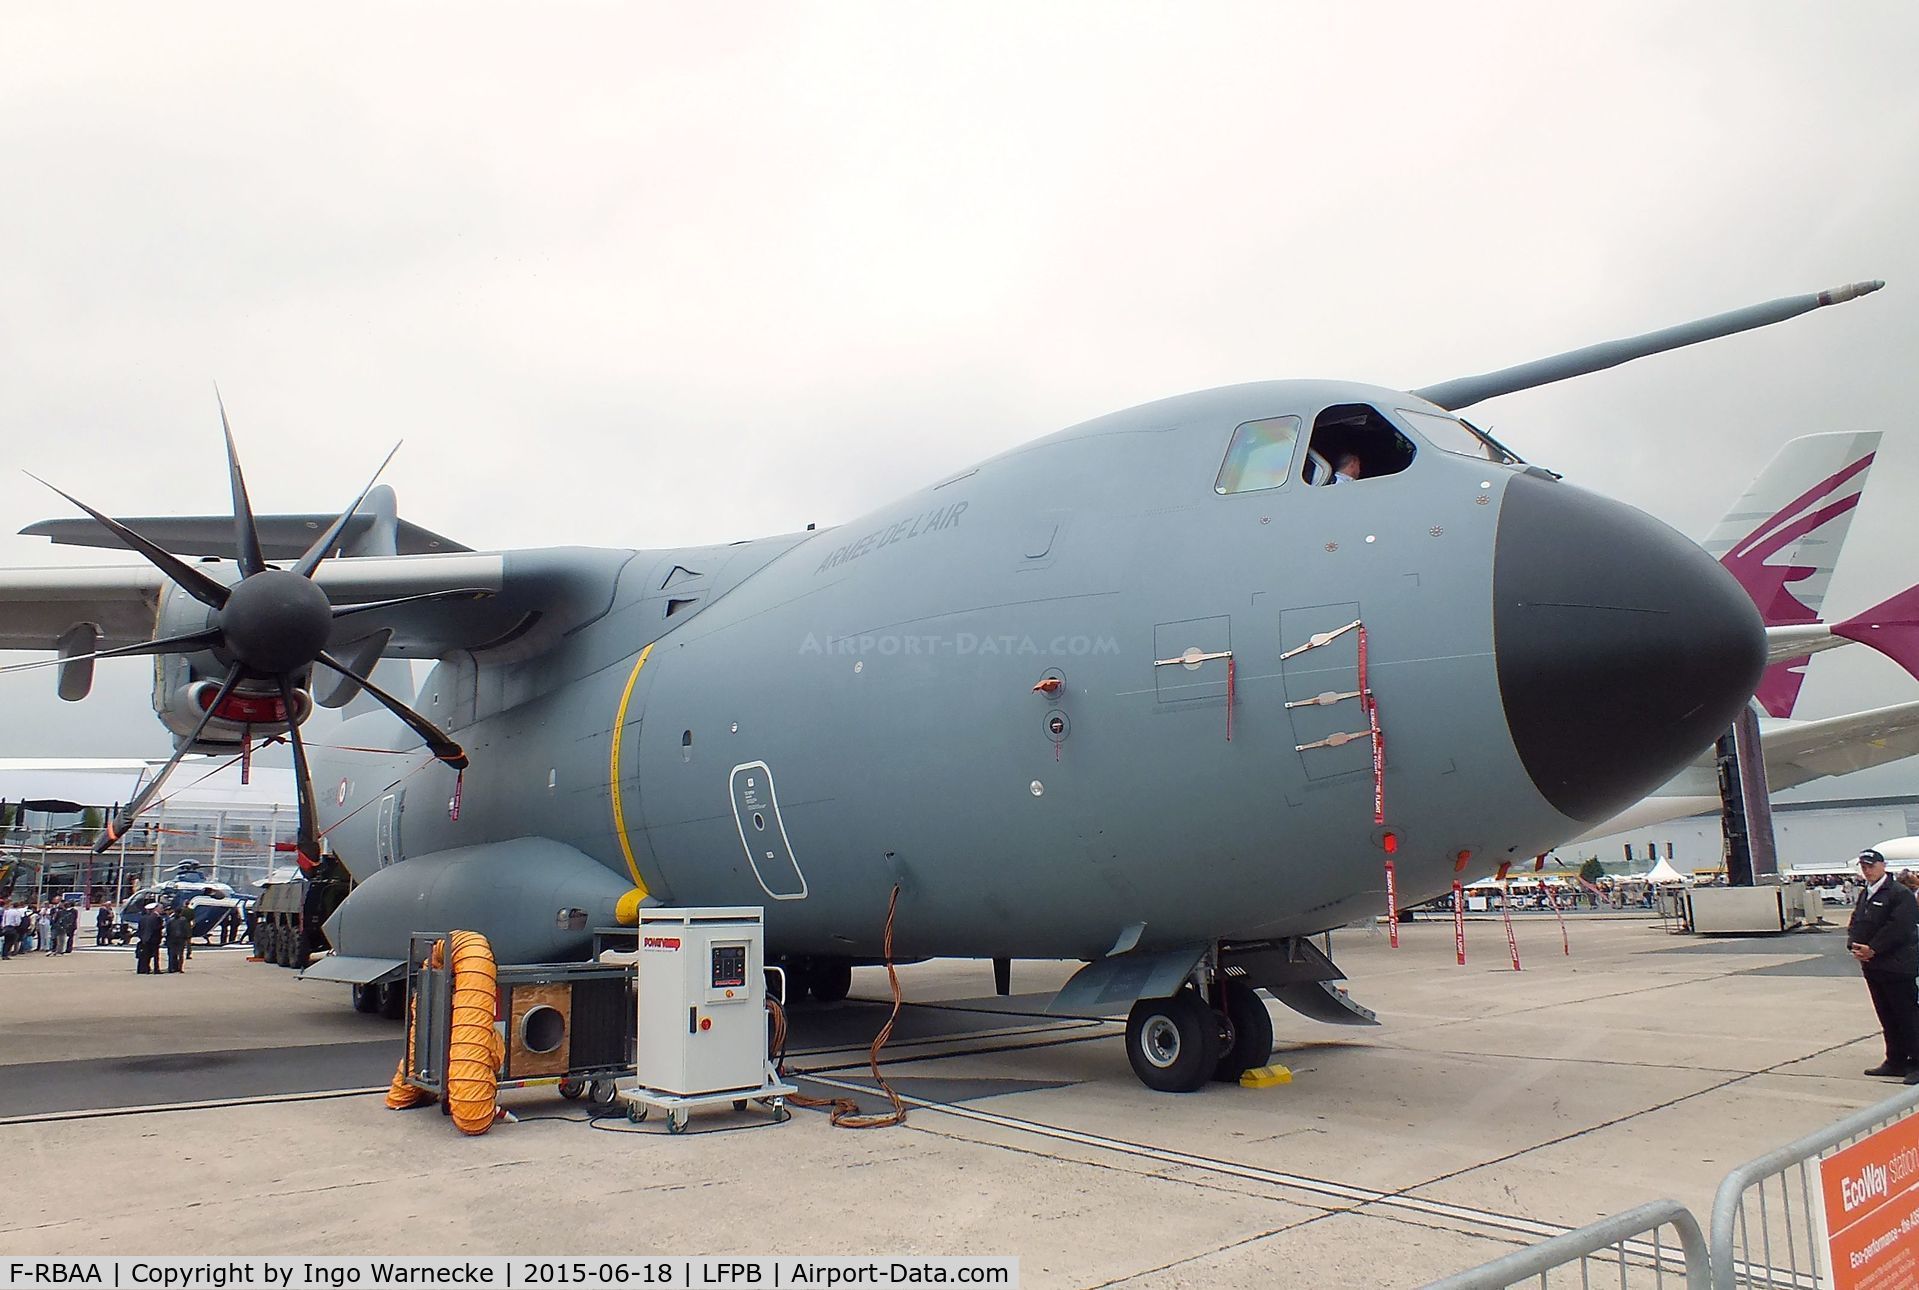 F-RBAA, 2013 Airbus A400M Atlas C/N 007, Airbus A400M Atlas of the Armee de l'Air at the Aerosalon 2015, Paris